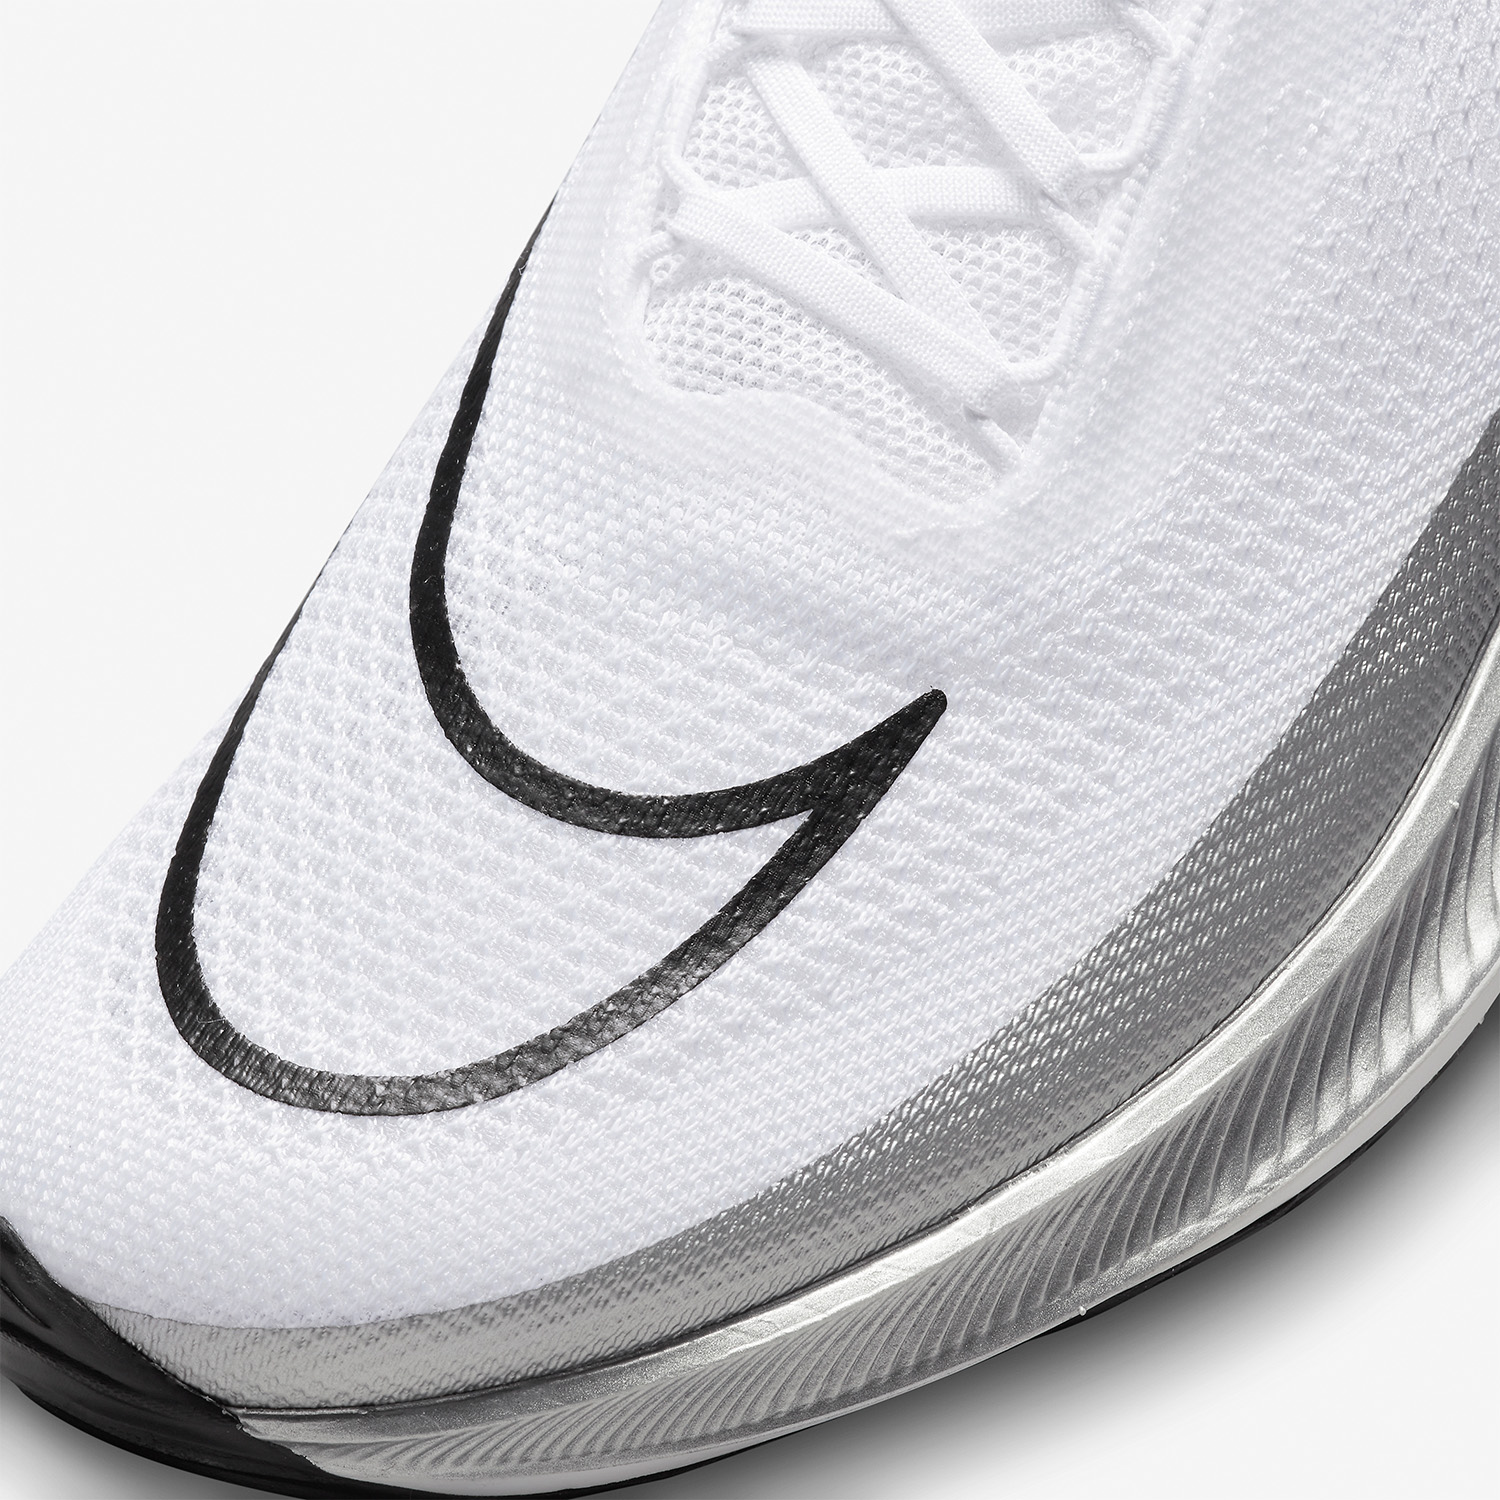 Nike ZoomX Streakfly Men's Running Shoes - White/Black